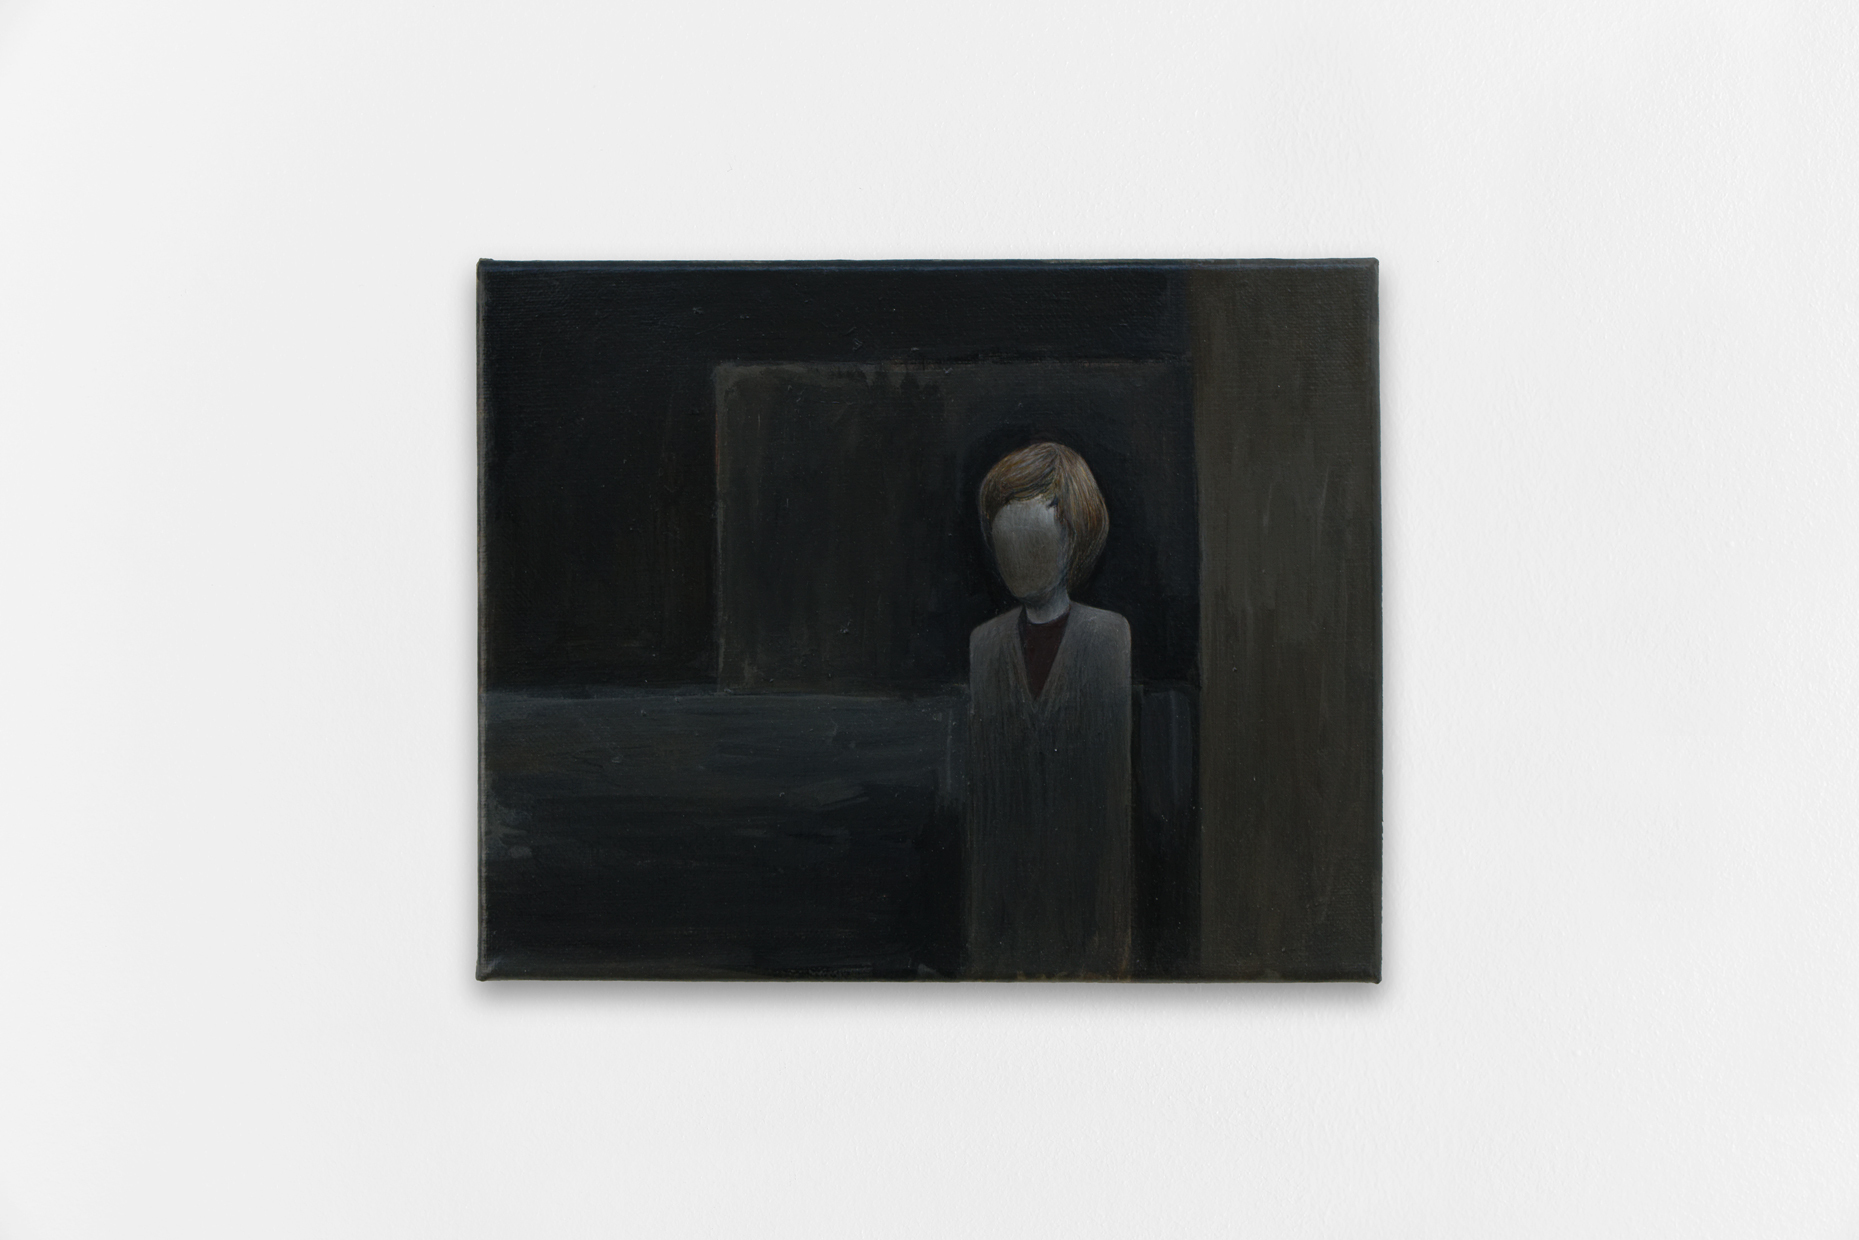 Arthur Marie, Mild Disturbance / so Removed from Reason, 2022, acrylic on canvas, 300 Ã— 240 mm